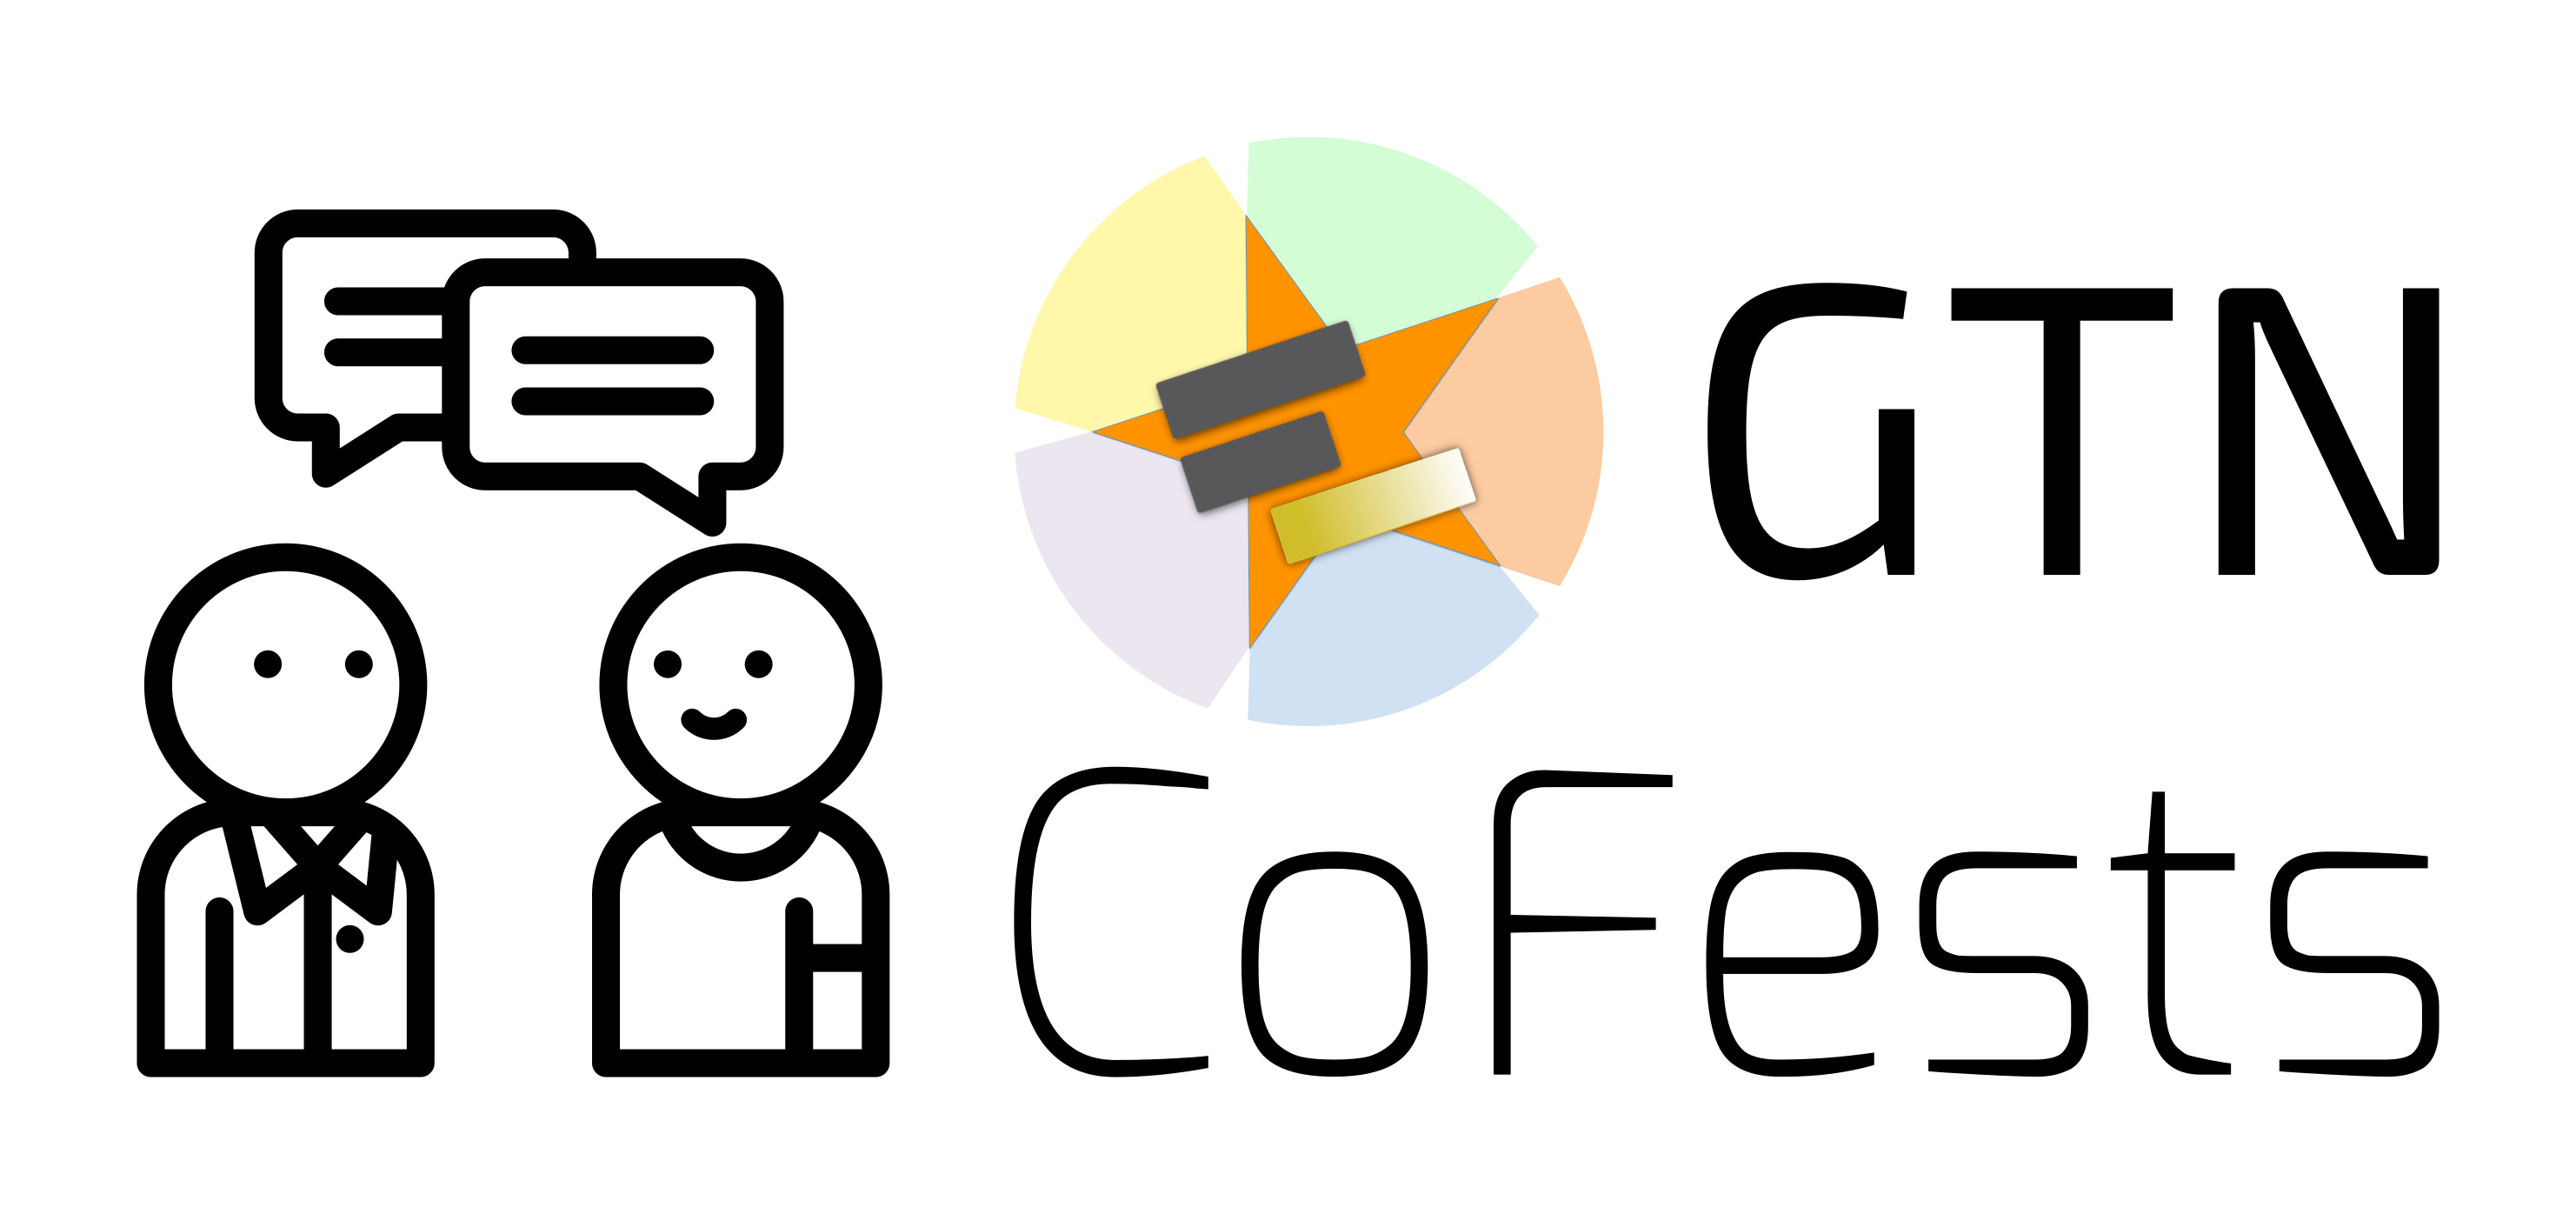 GTN Cofest and Community Call + Paper Cuts February